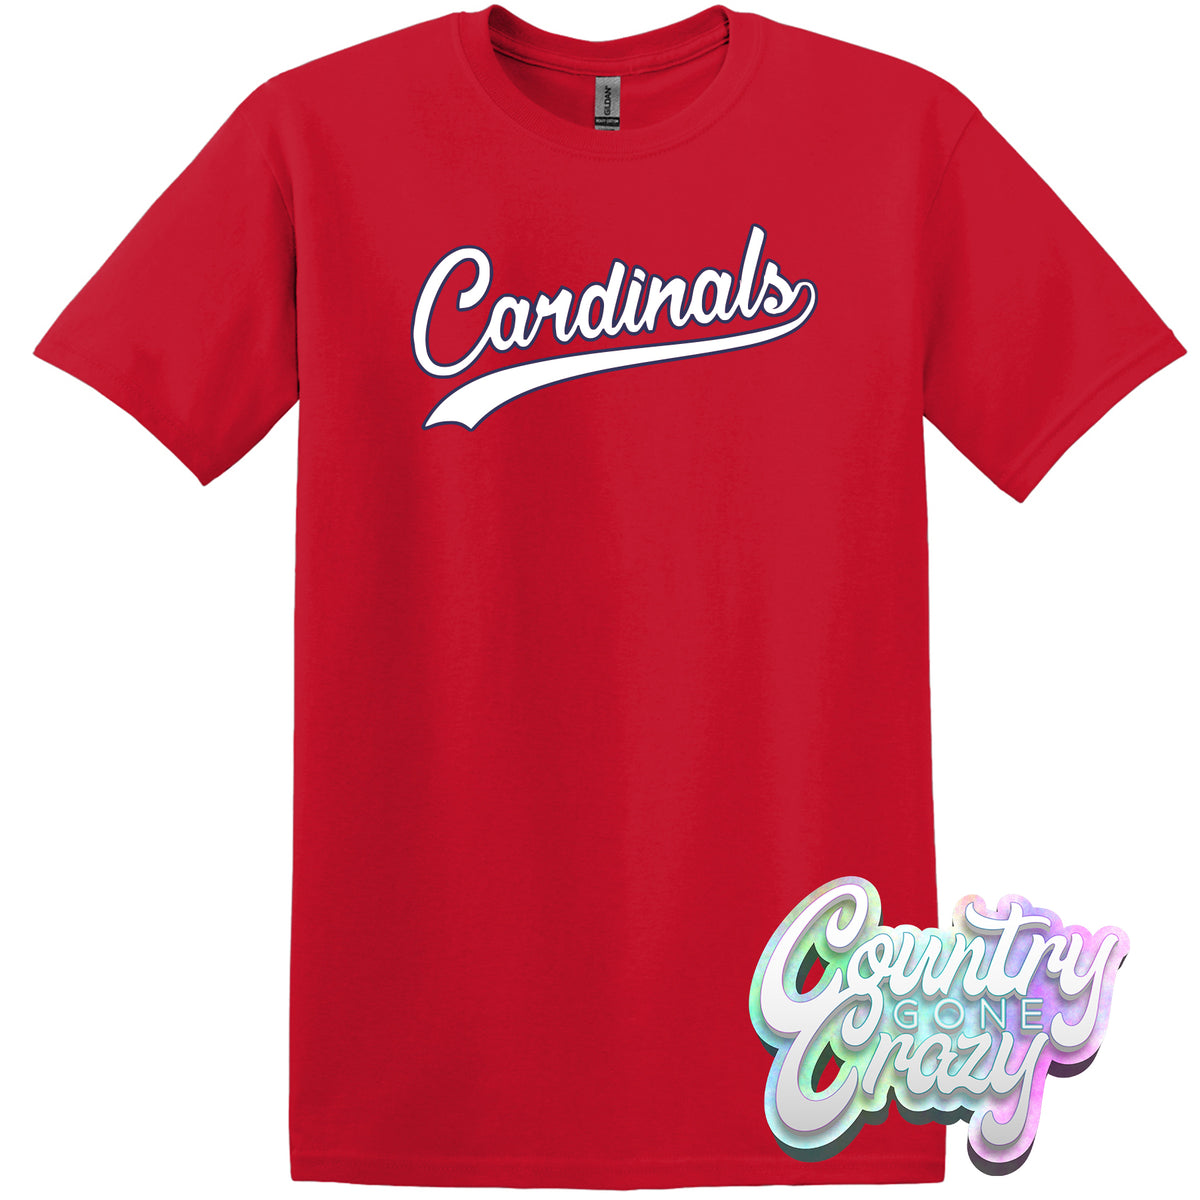 st louis cardinals jersey size 5t